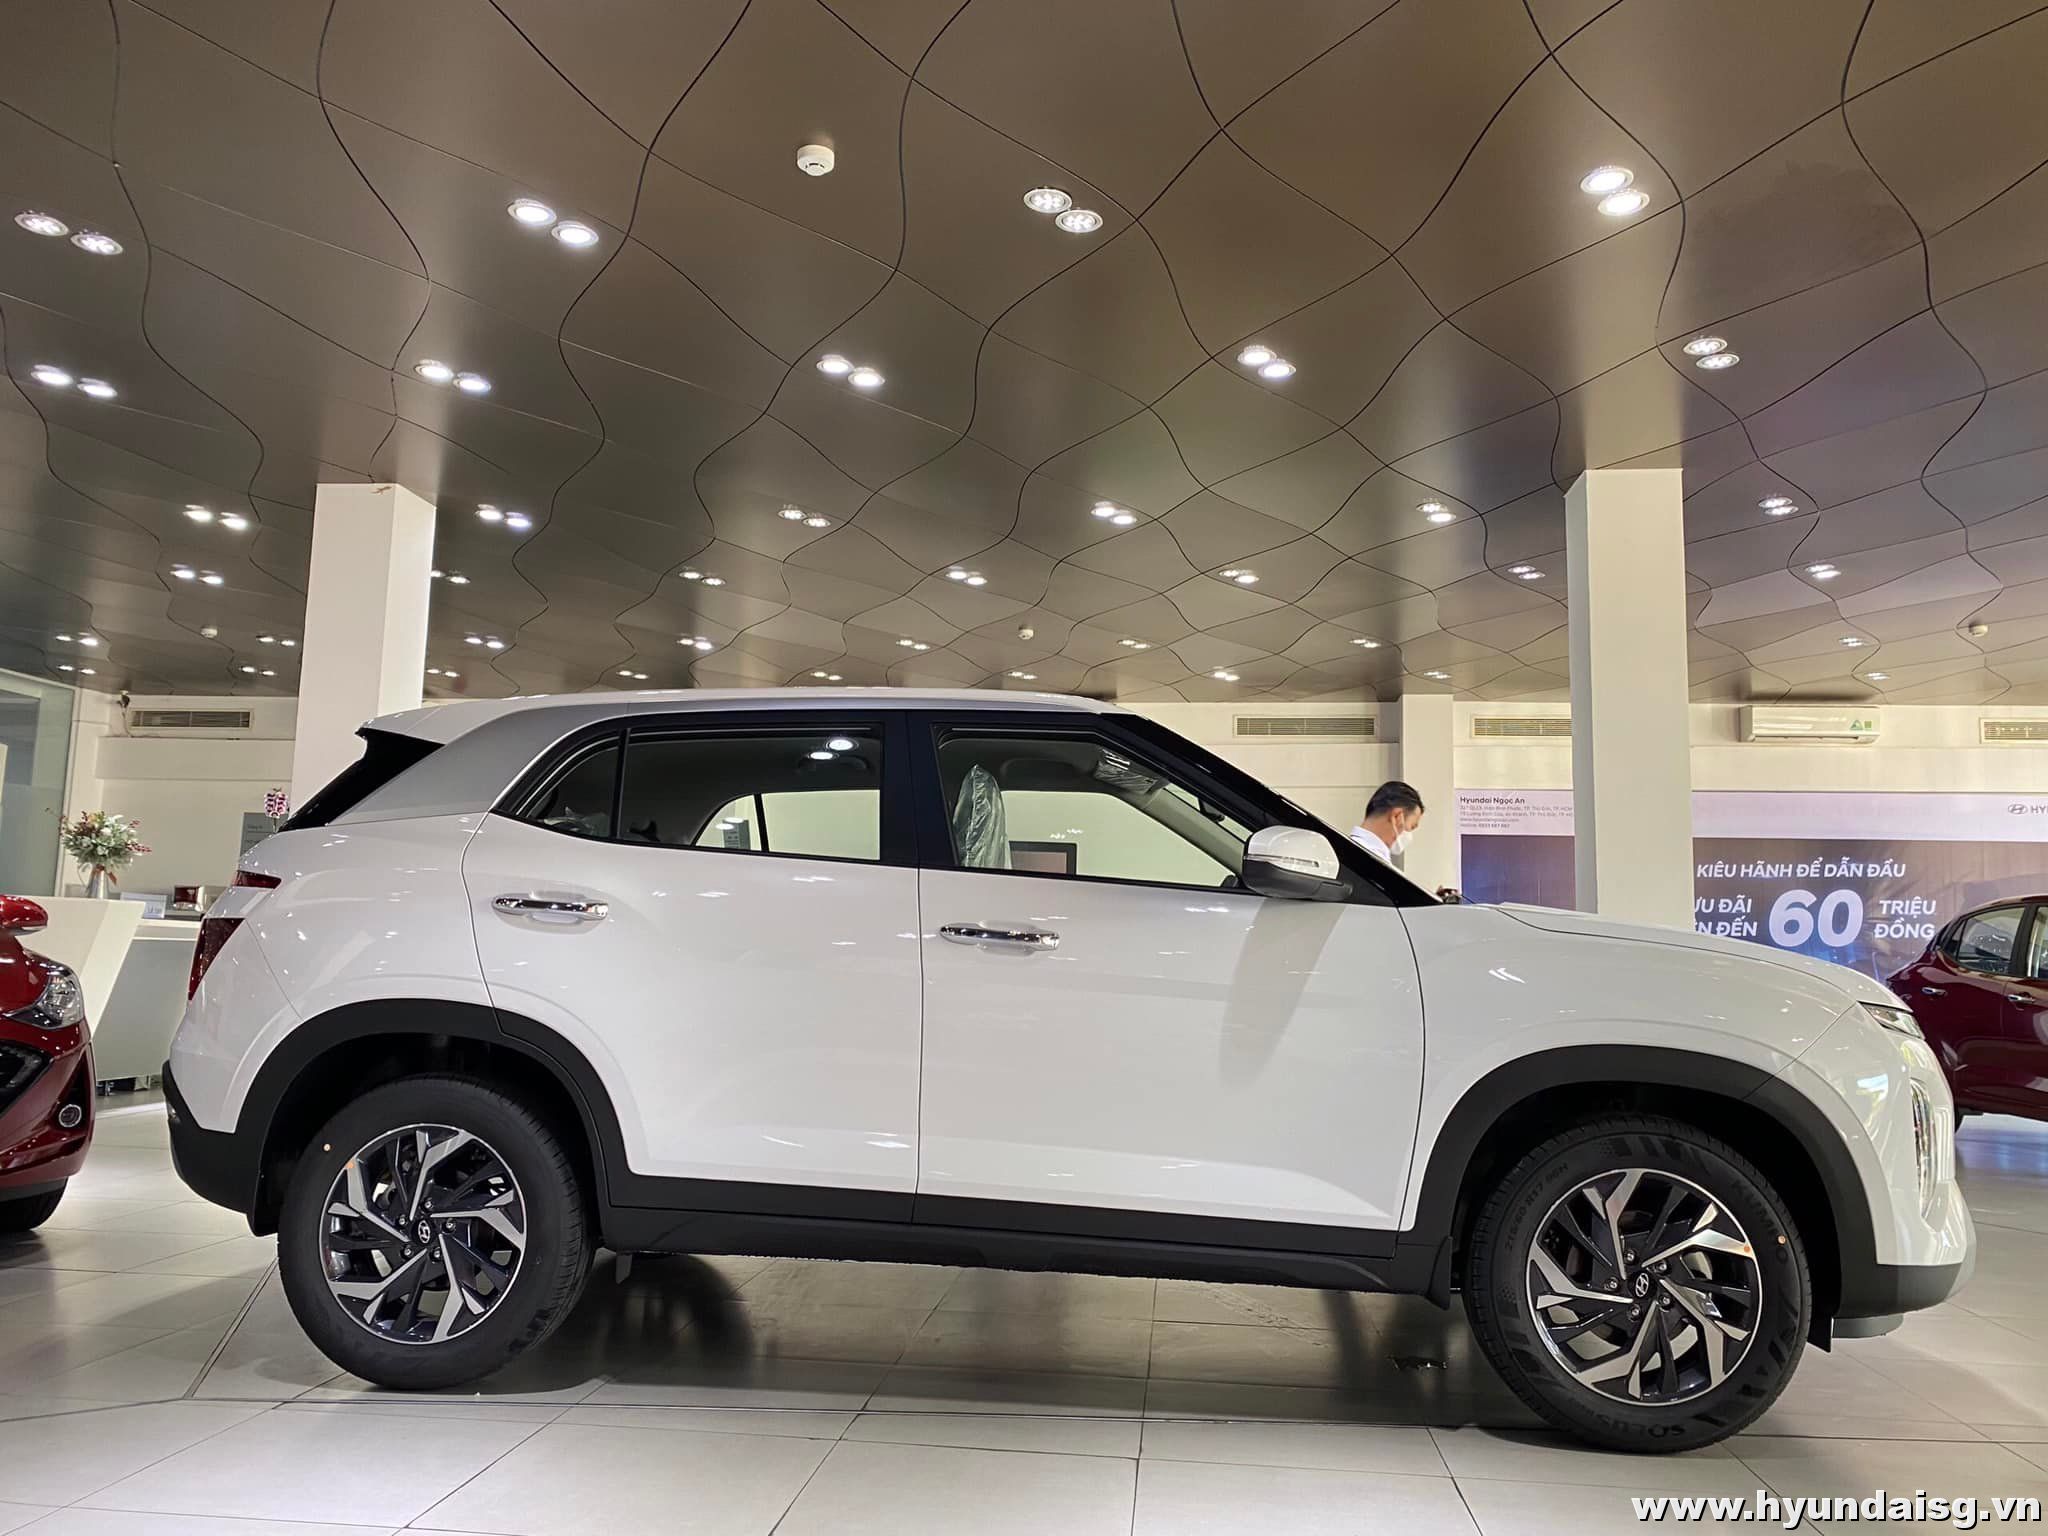 Hyundai Creta bản đặc biệt năm 2022 với màu trắng sang trọng sẽ khiến bạn hài lòng với thiết kế tối giản và những tính năng tiện ích hiện đại. Hãy cùng chiêm ngưỡng mẫu xe đẳng cấp này.